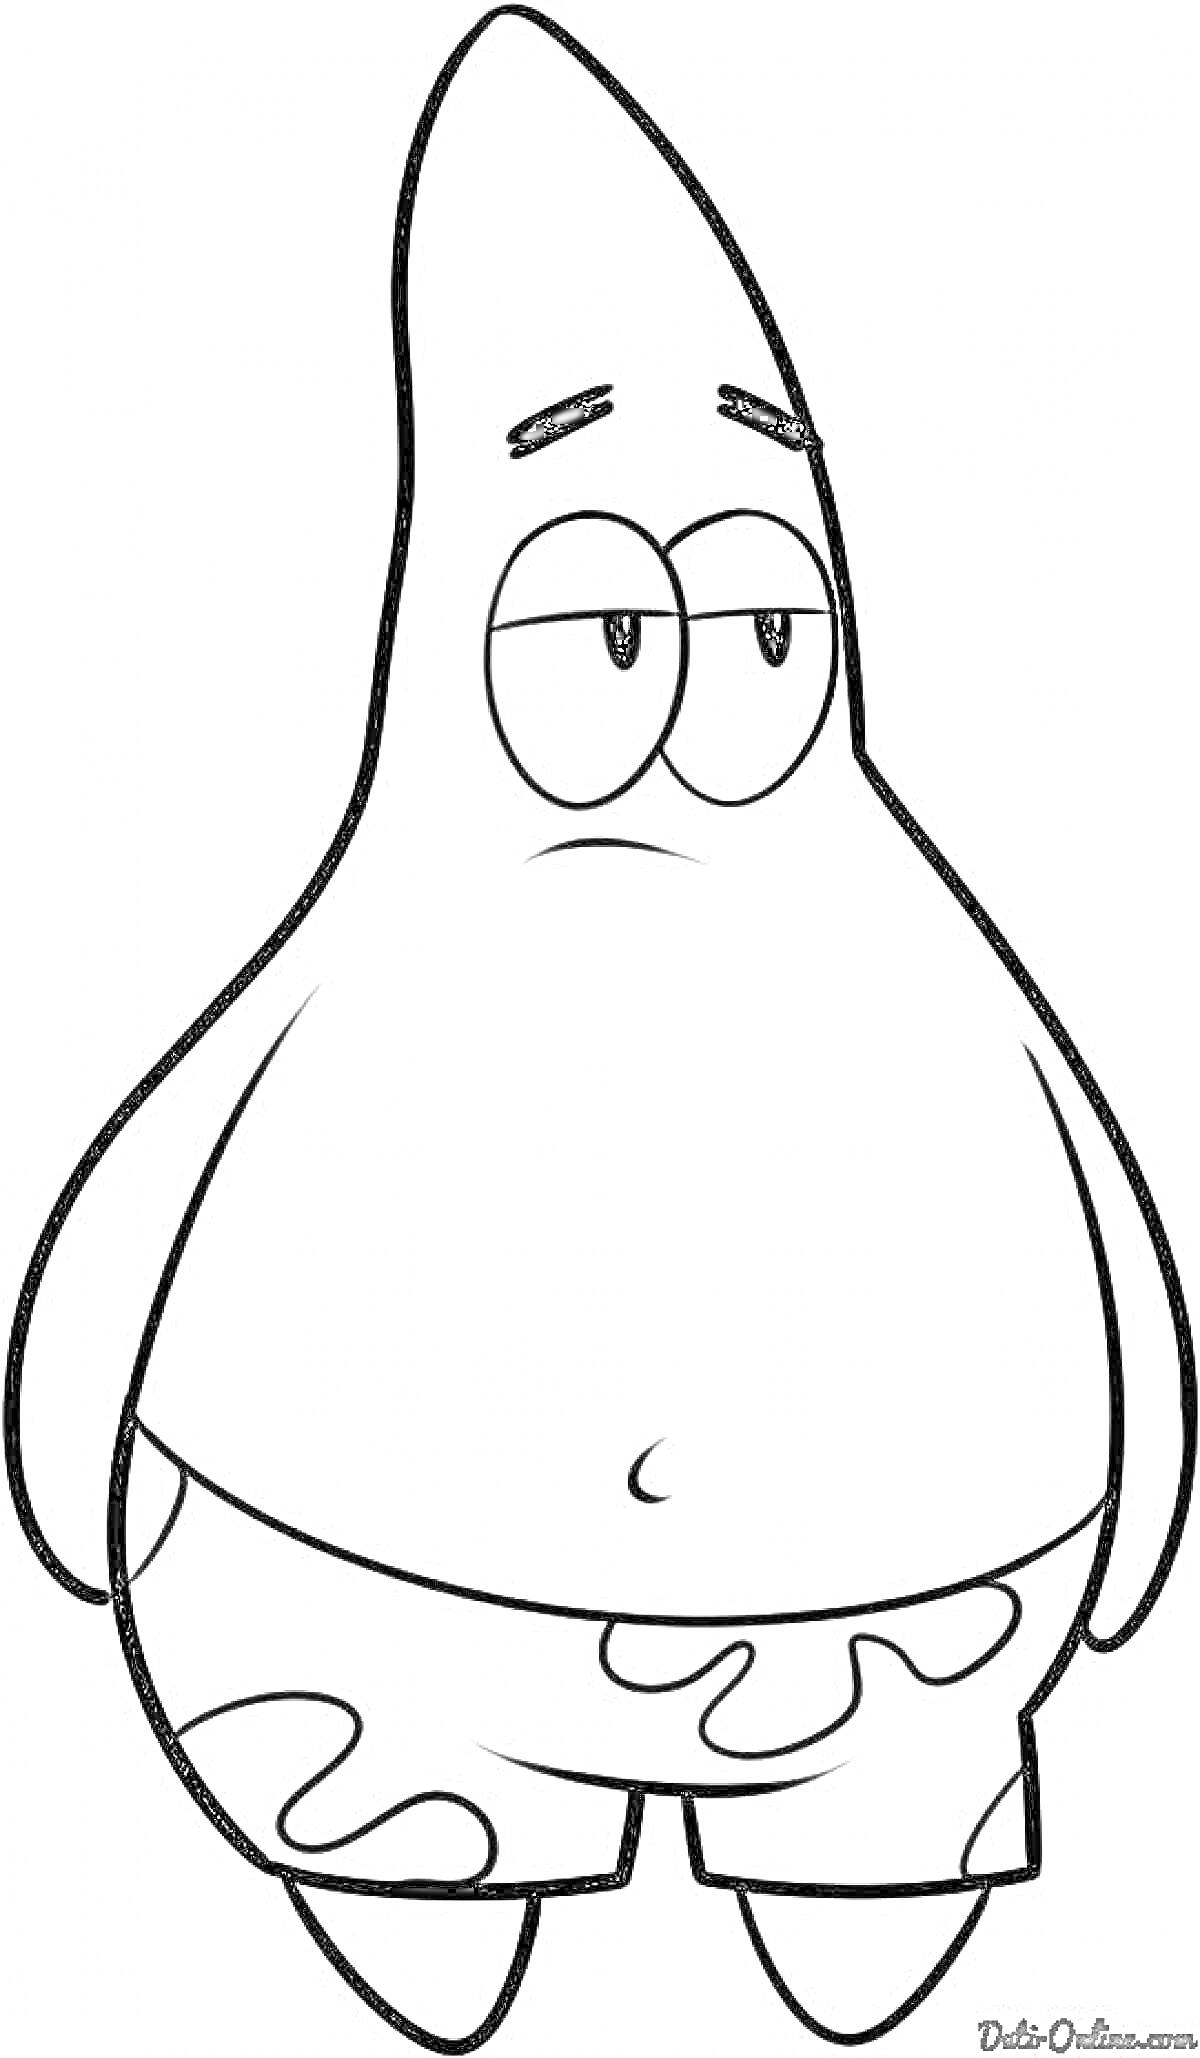 Раскраска Патрик в плавательных шортах, стоящий с грустным выражением лица